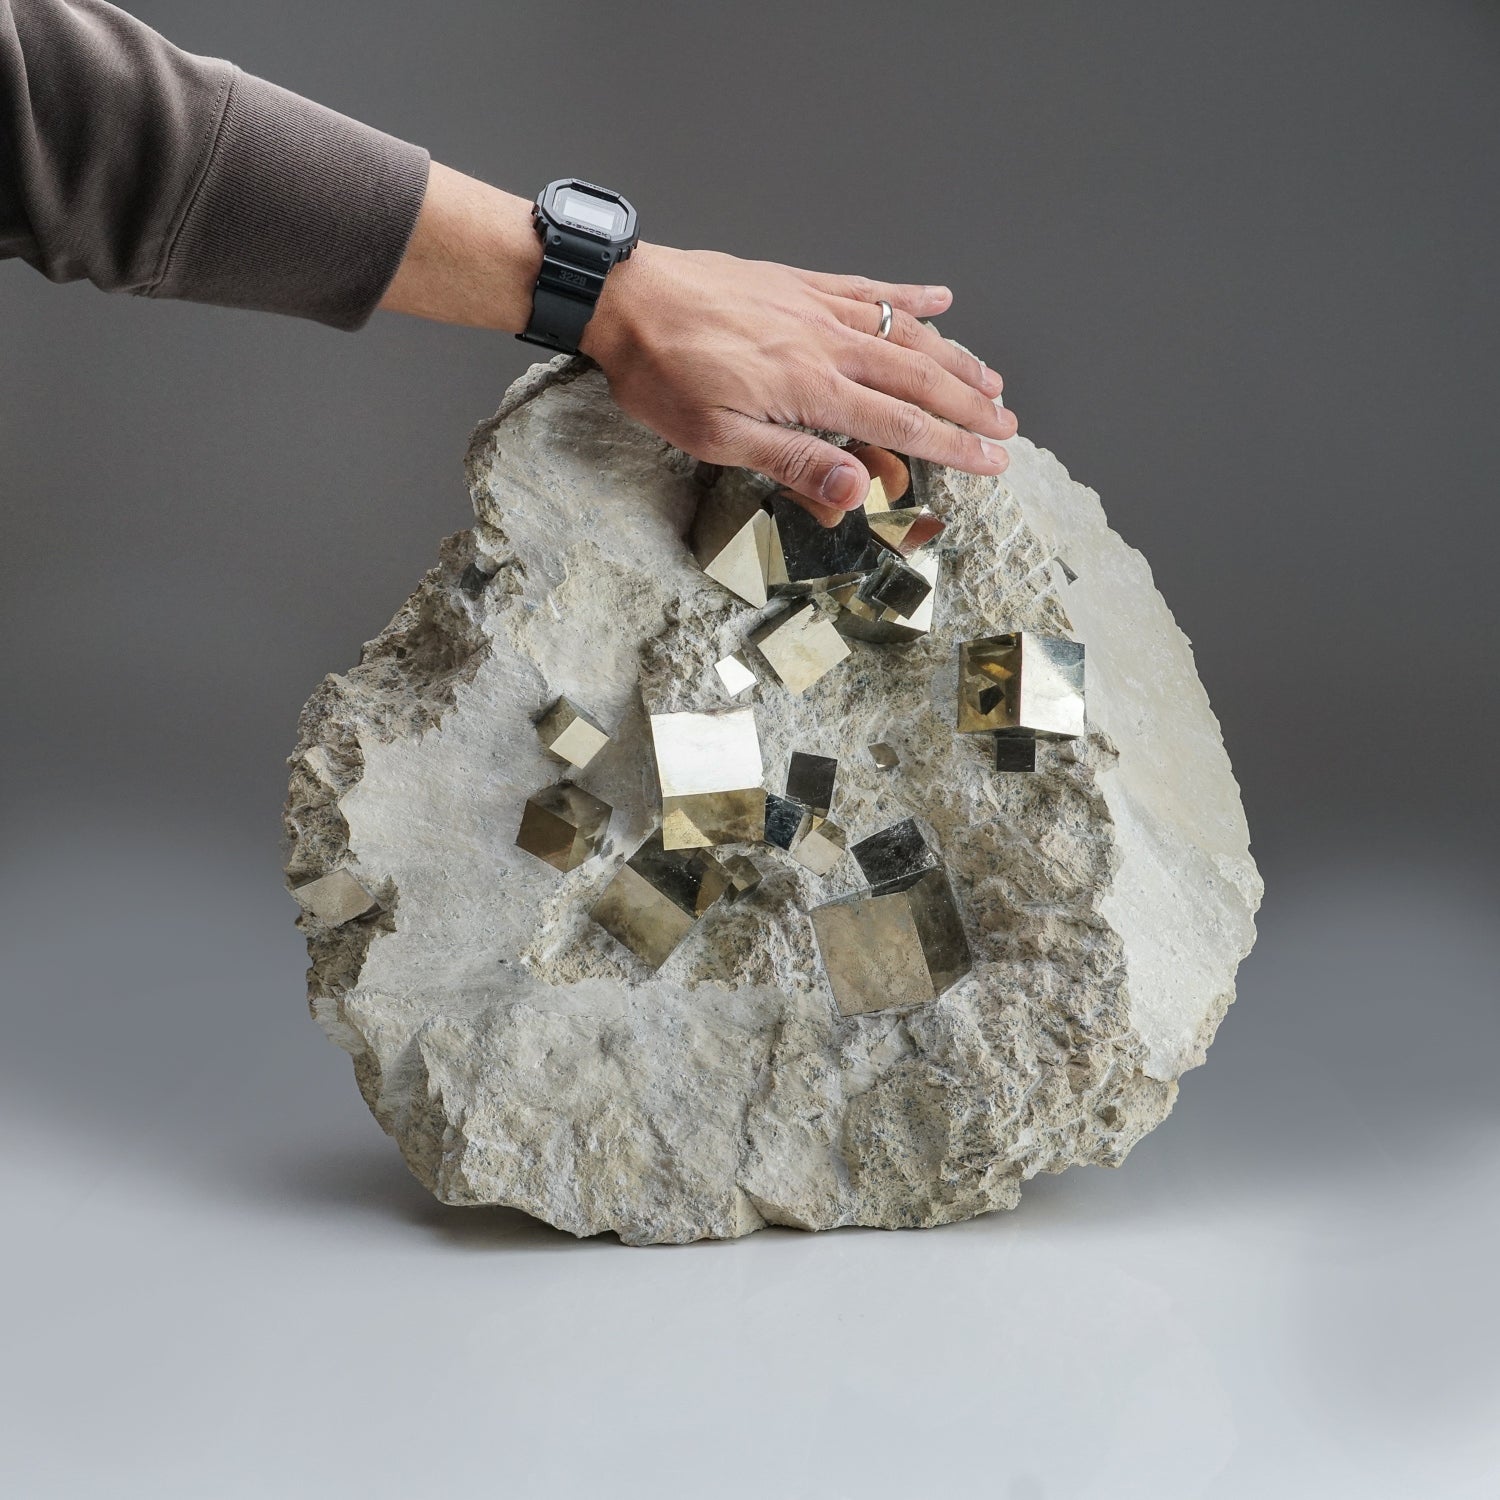 Genuine Pyrite Cubes on Basalt From Navajun, Spain (54.2 lbs)